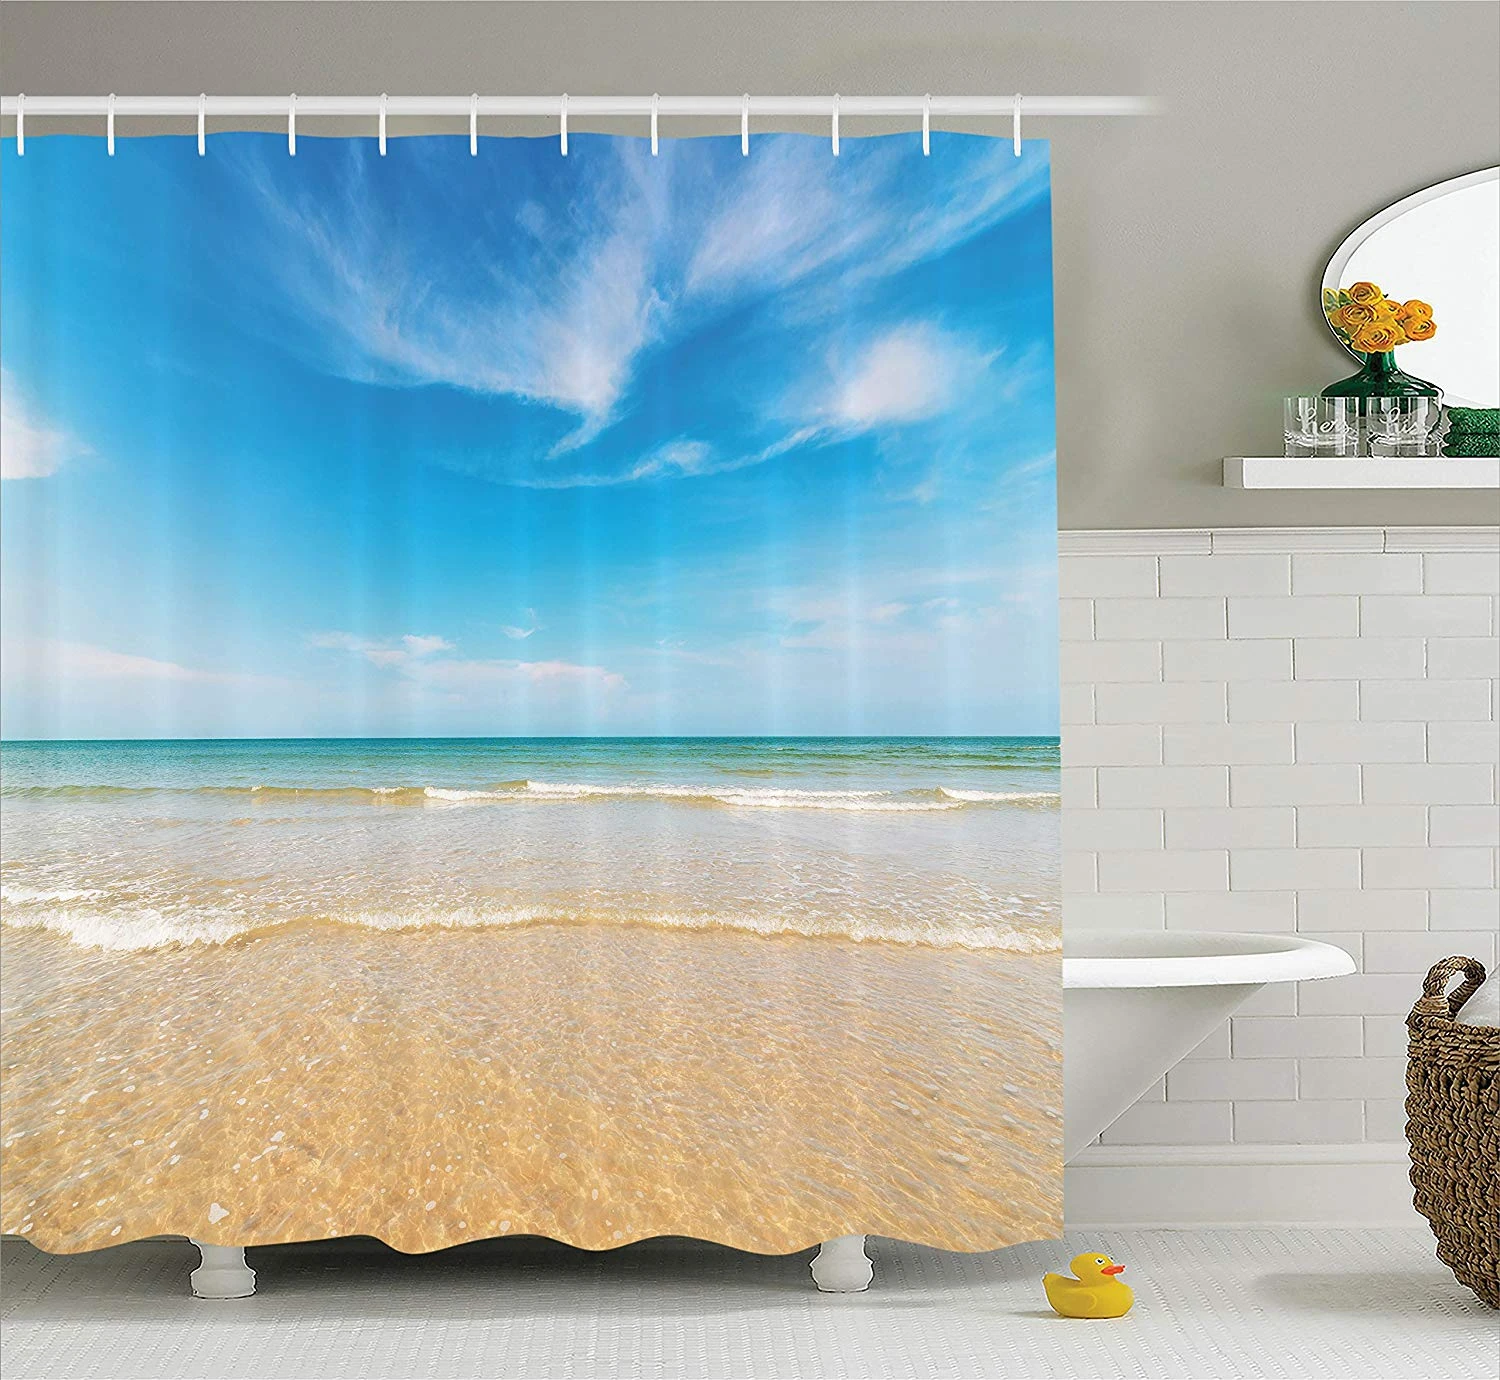 Costas estrecho cortina de ducha caribe mar de verano